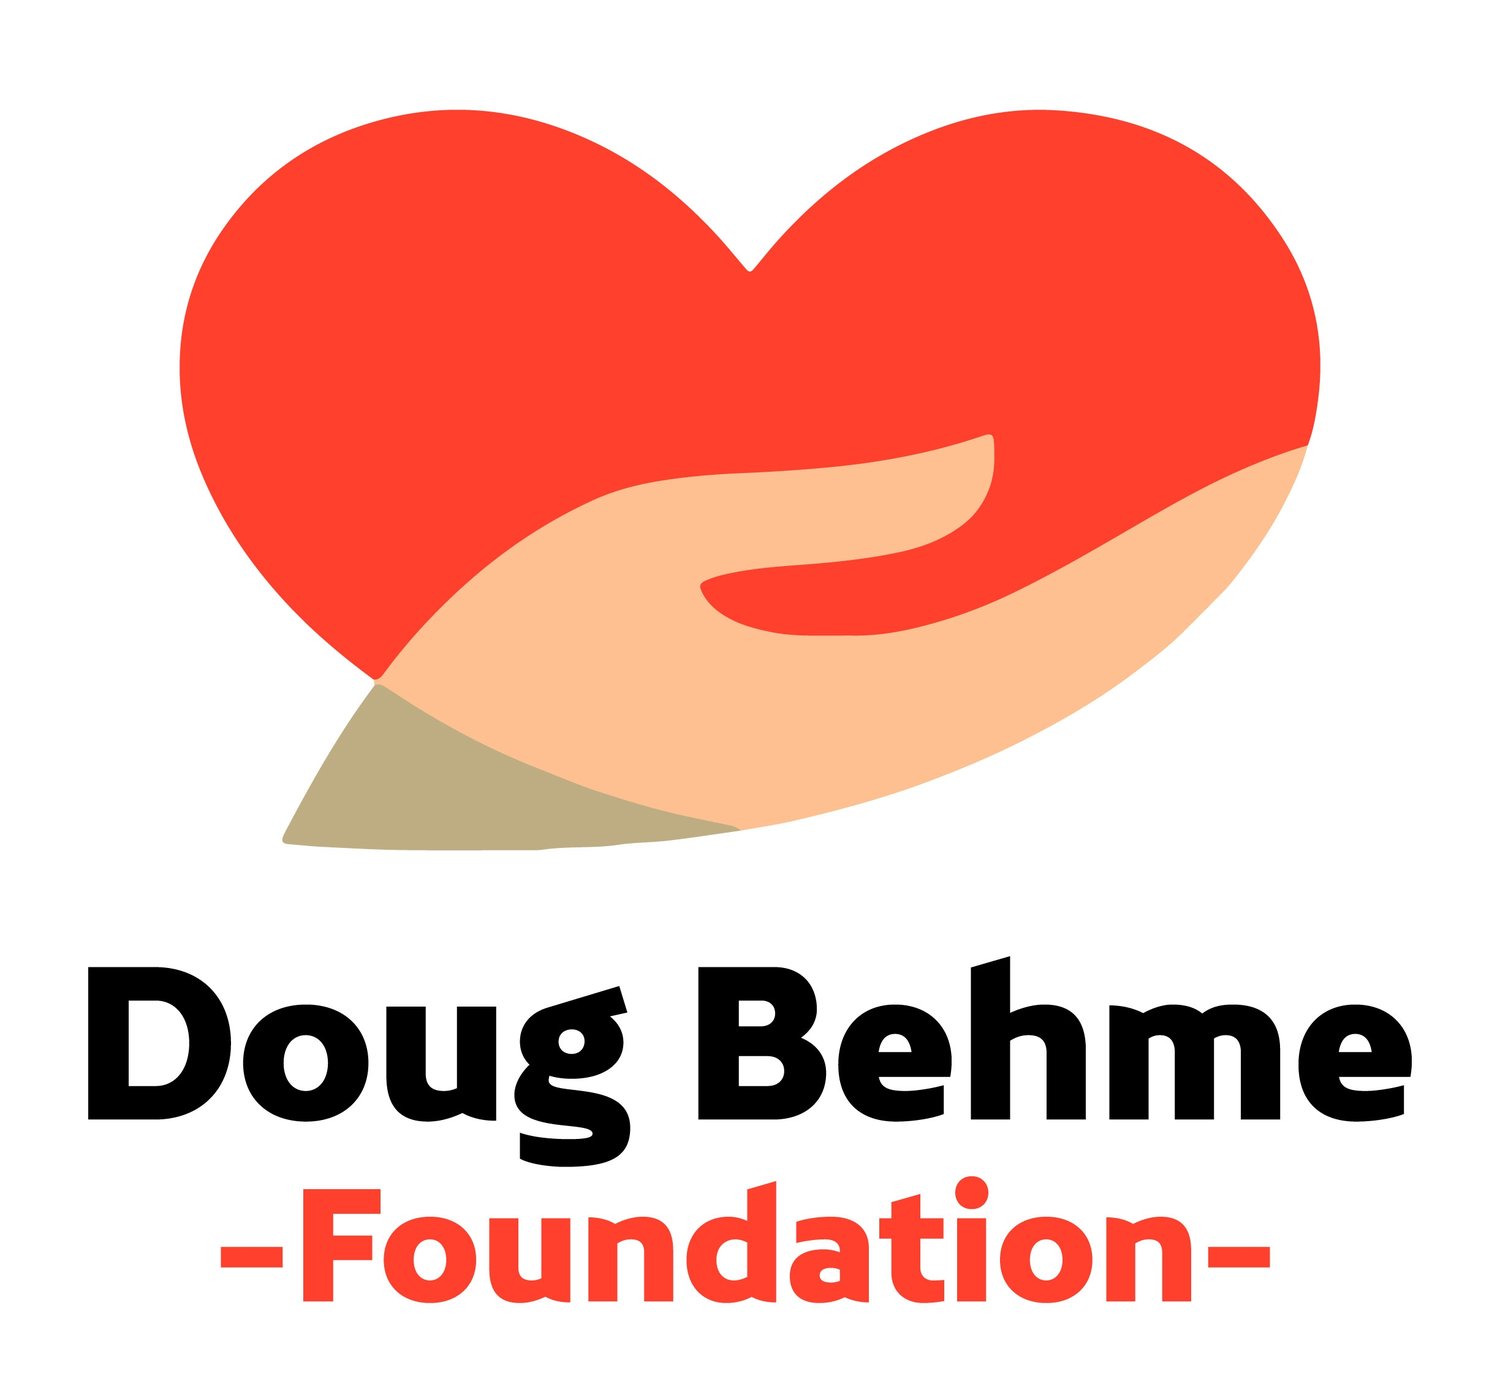 Doug Behme Foundation